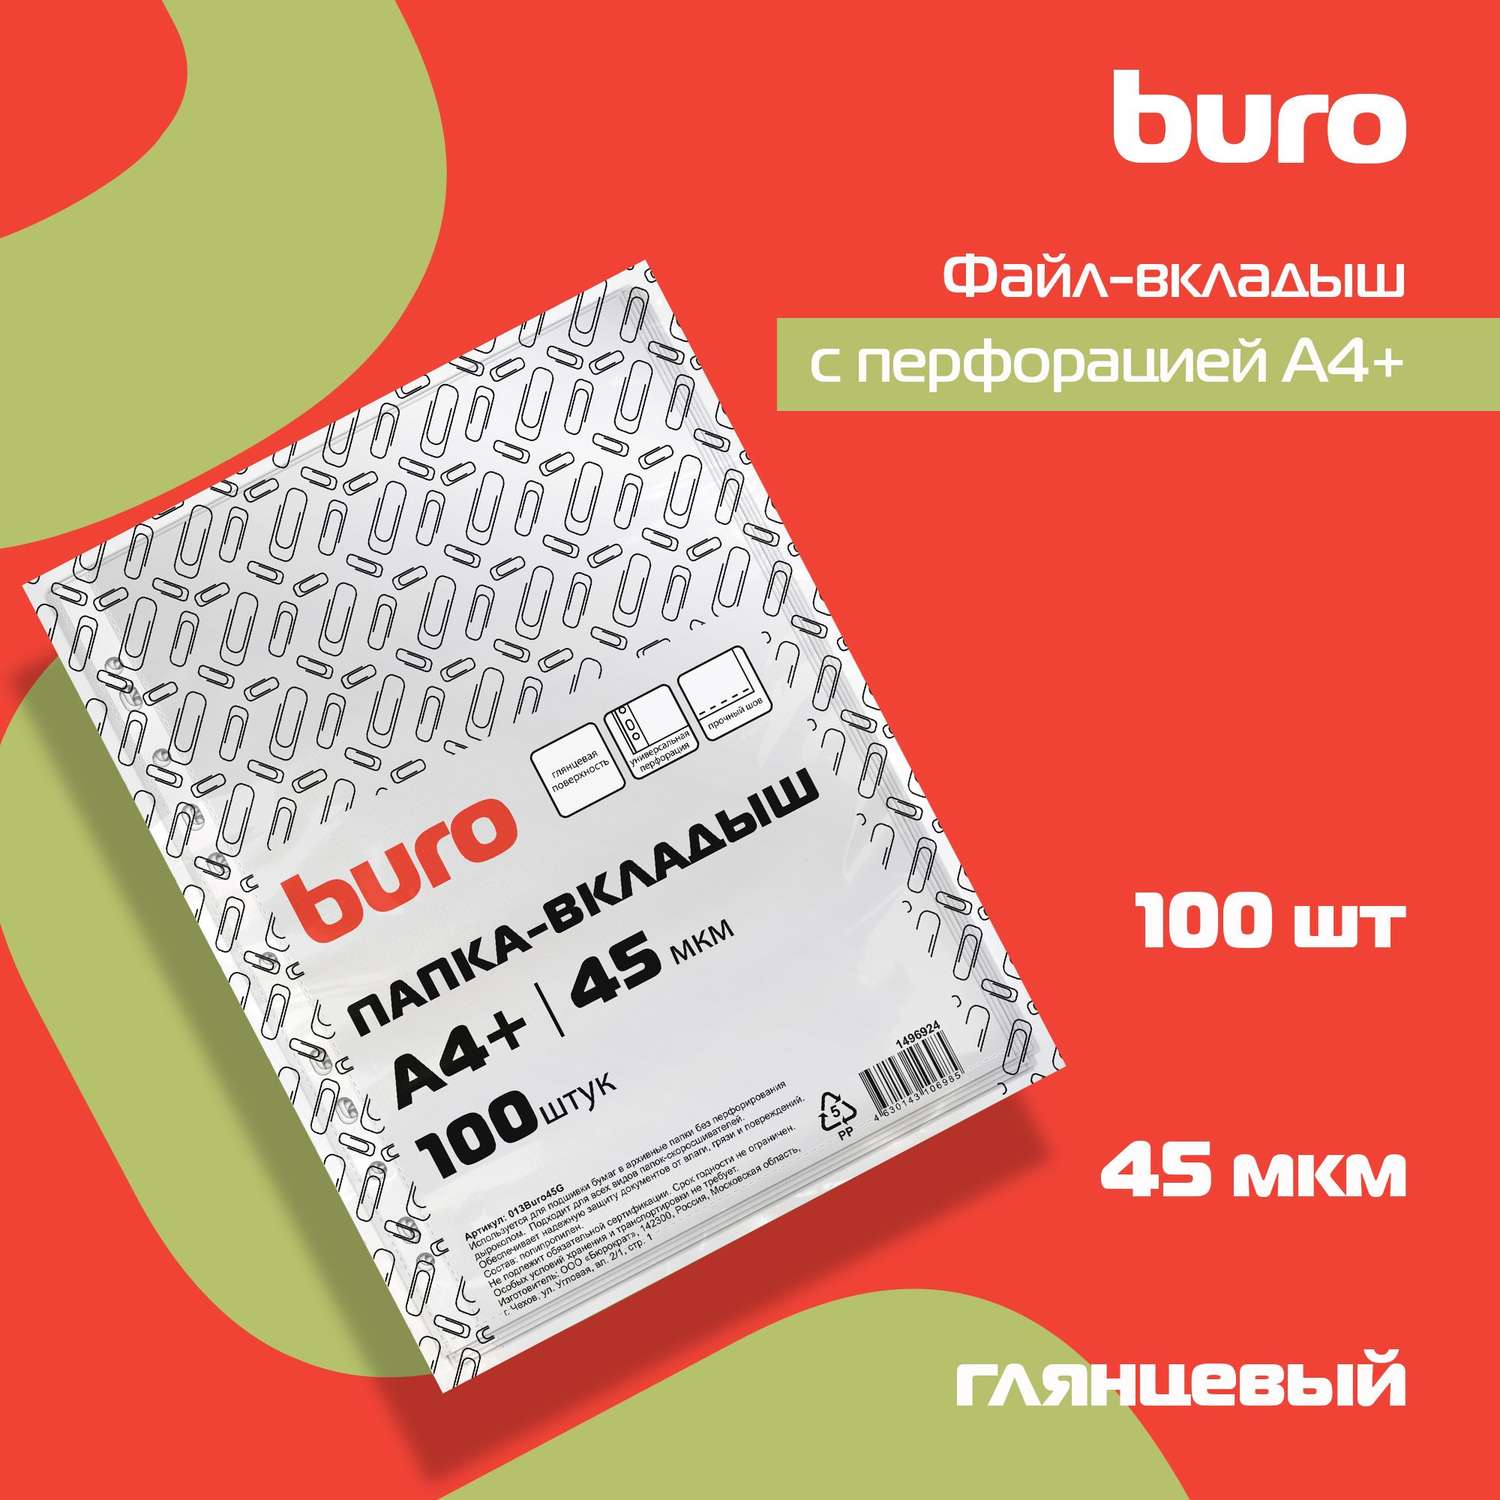 Файлы-вкладыши Buro глянцевые А4+ 45мкм упаковка 100 шт - фото 6